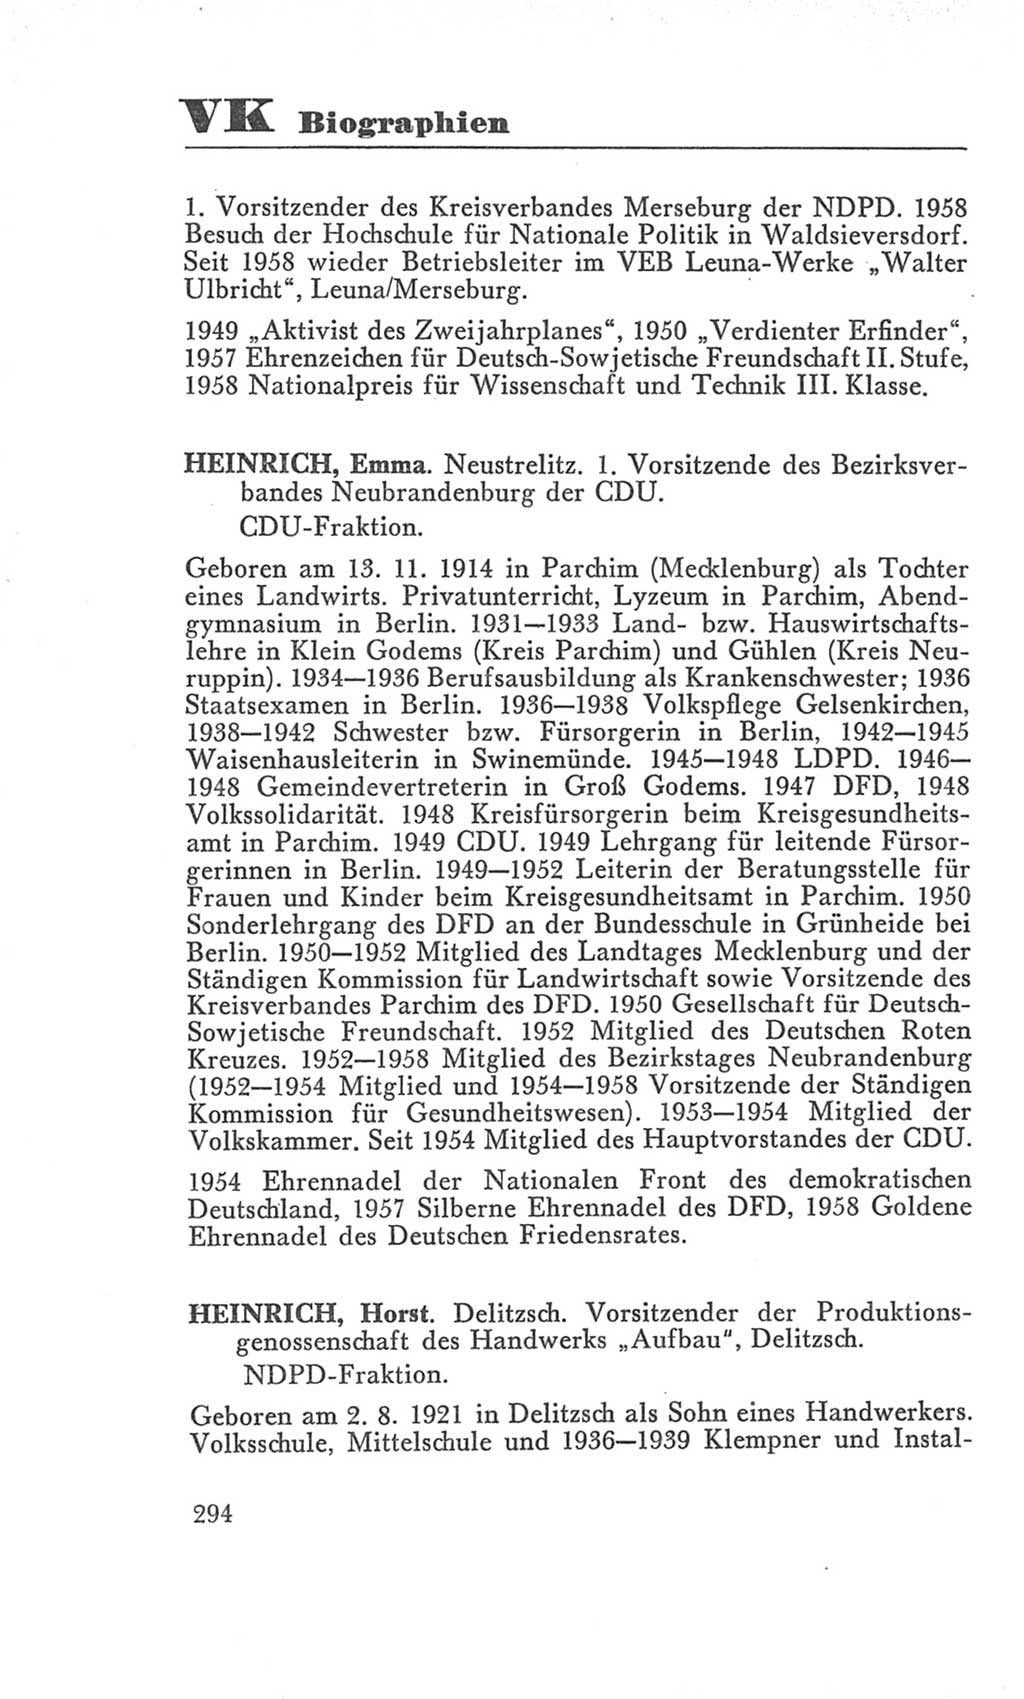 Handbuch der Volkskammer (VK) der Deutschen Demokratischen Republik (DDR), 3. Wahlperiode 1958-1963, Seite 294 (Hdb. VK. DDR 3. WP. 1958-1963, S. 294)